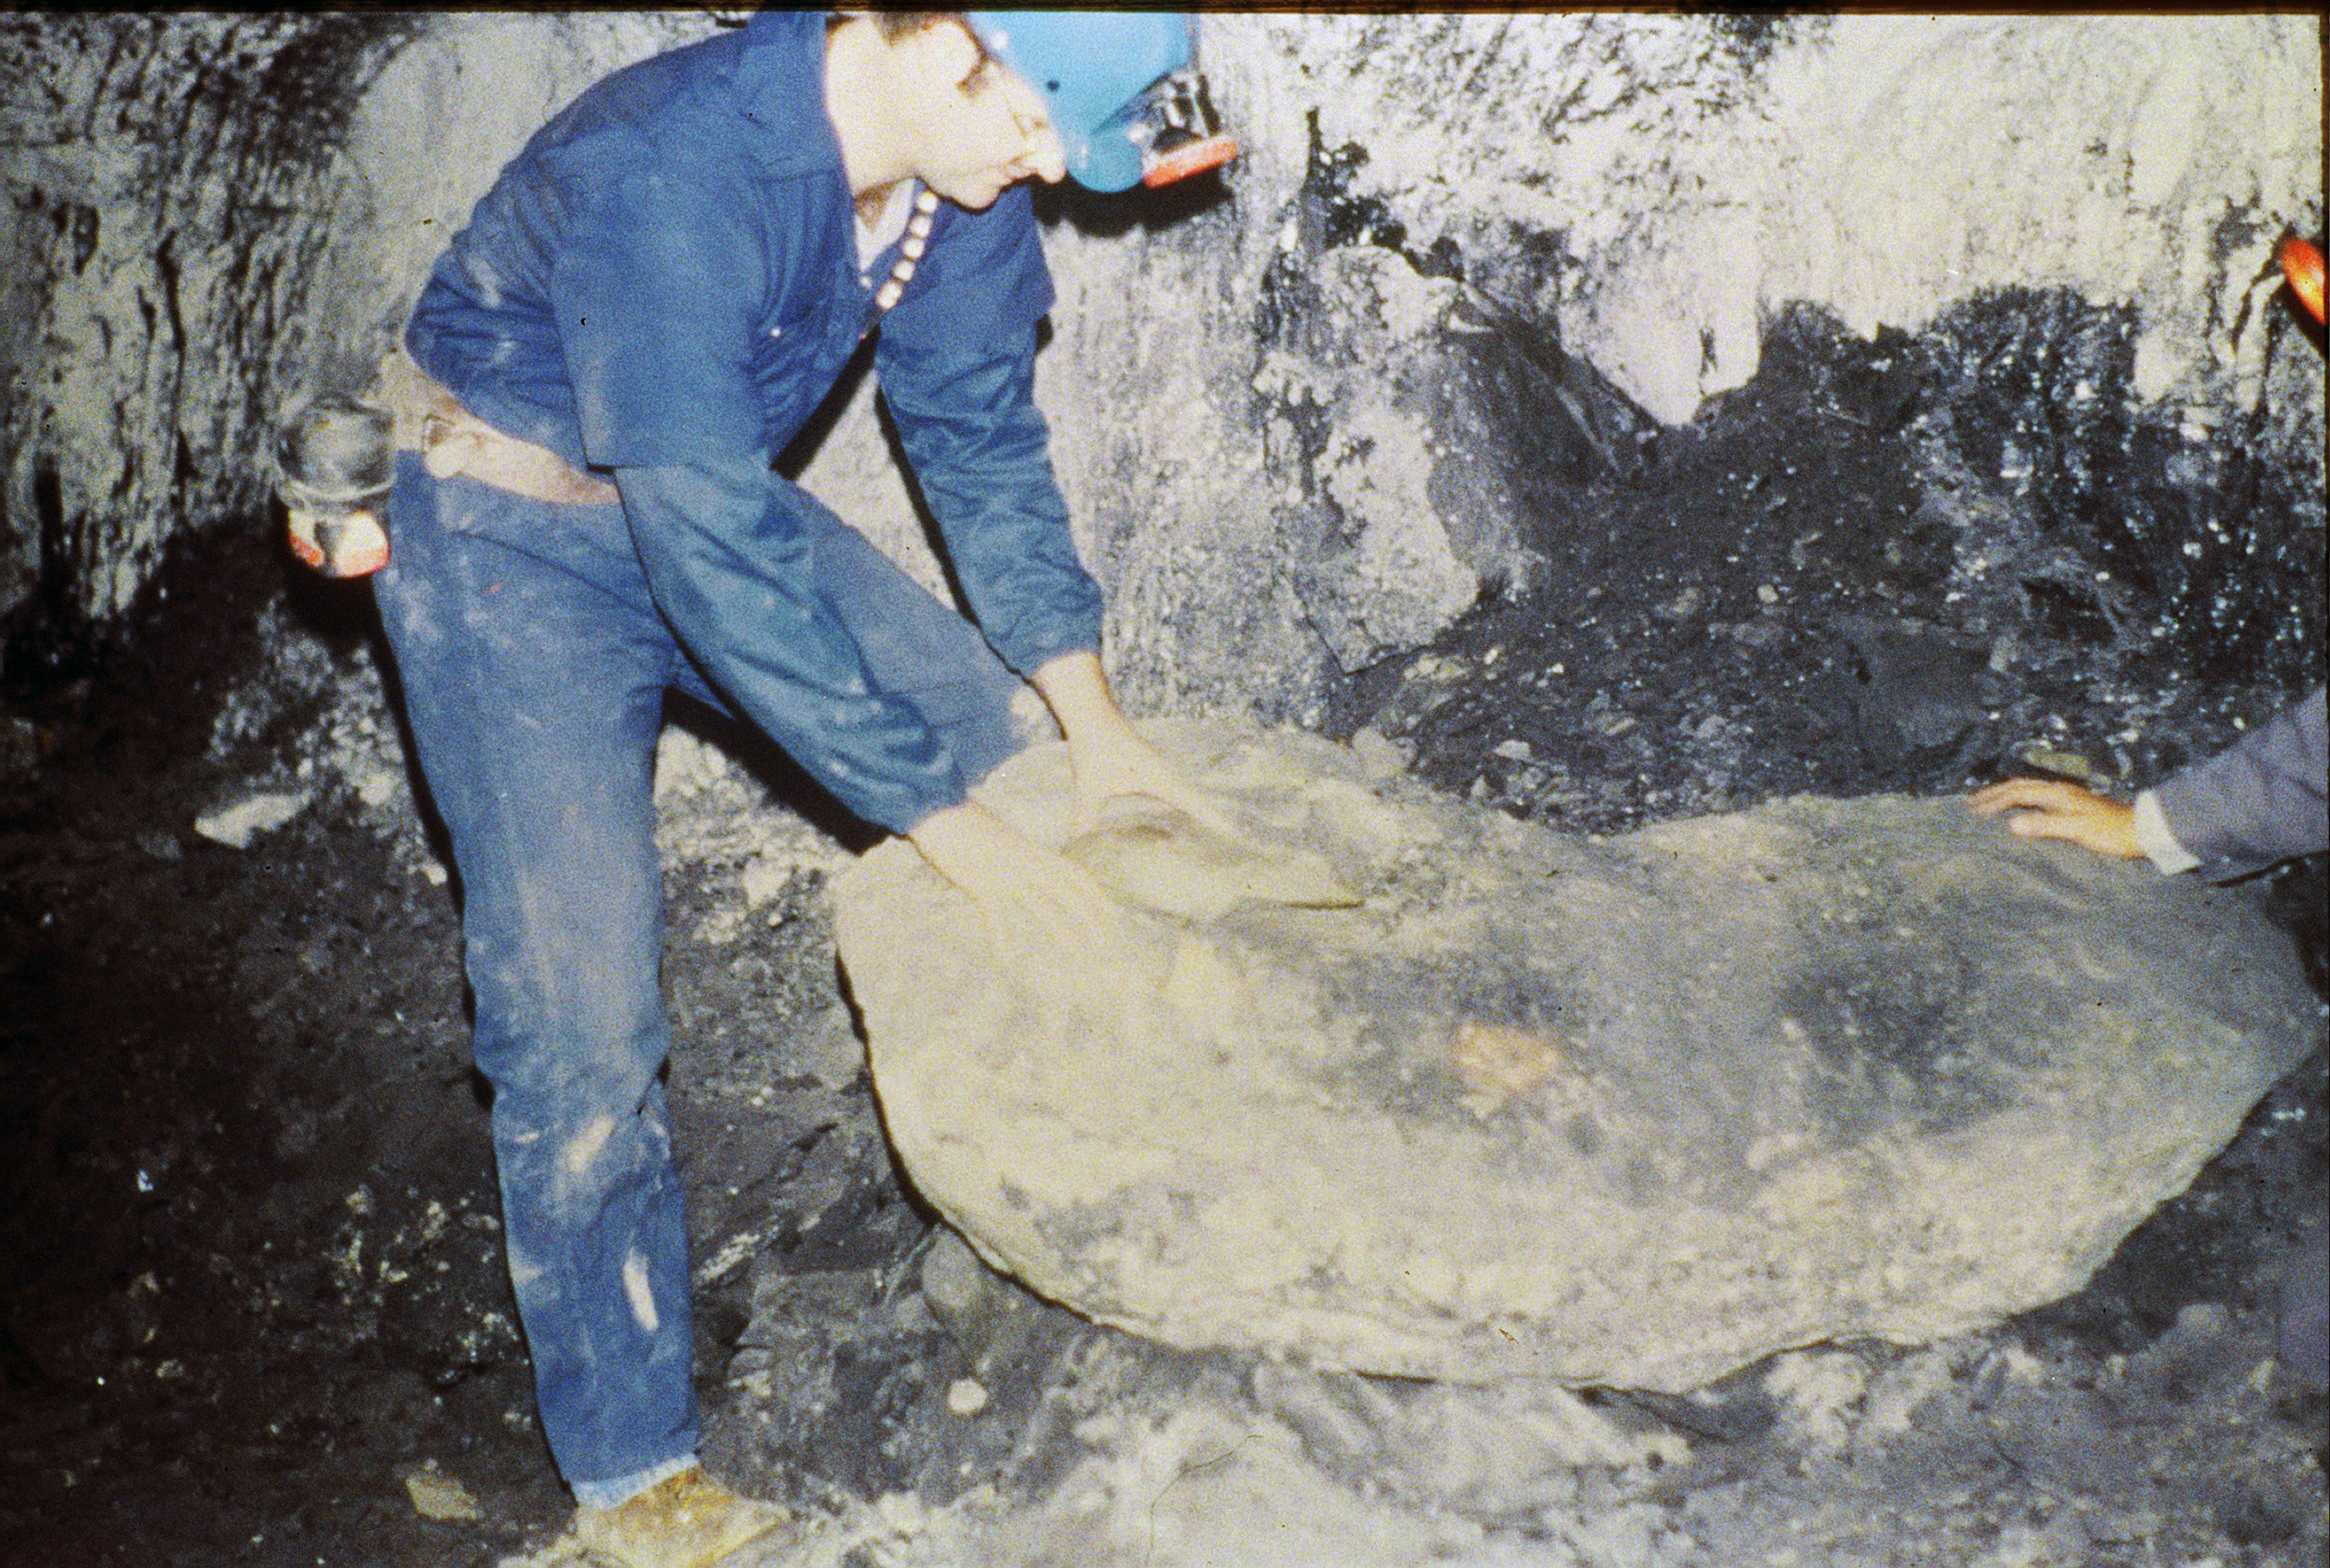 جدا شدن شیل سیاه از بتن آهکی در سقف بالای بستر زغال سنگ اسپرینگفیلد، کنتاکی غربی.